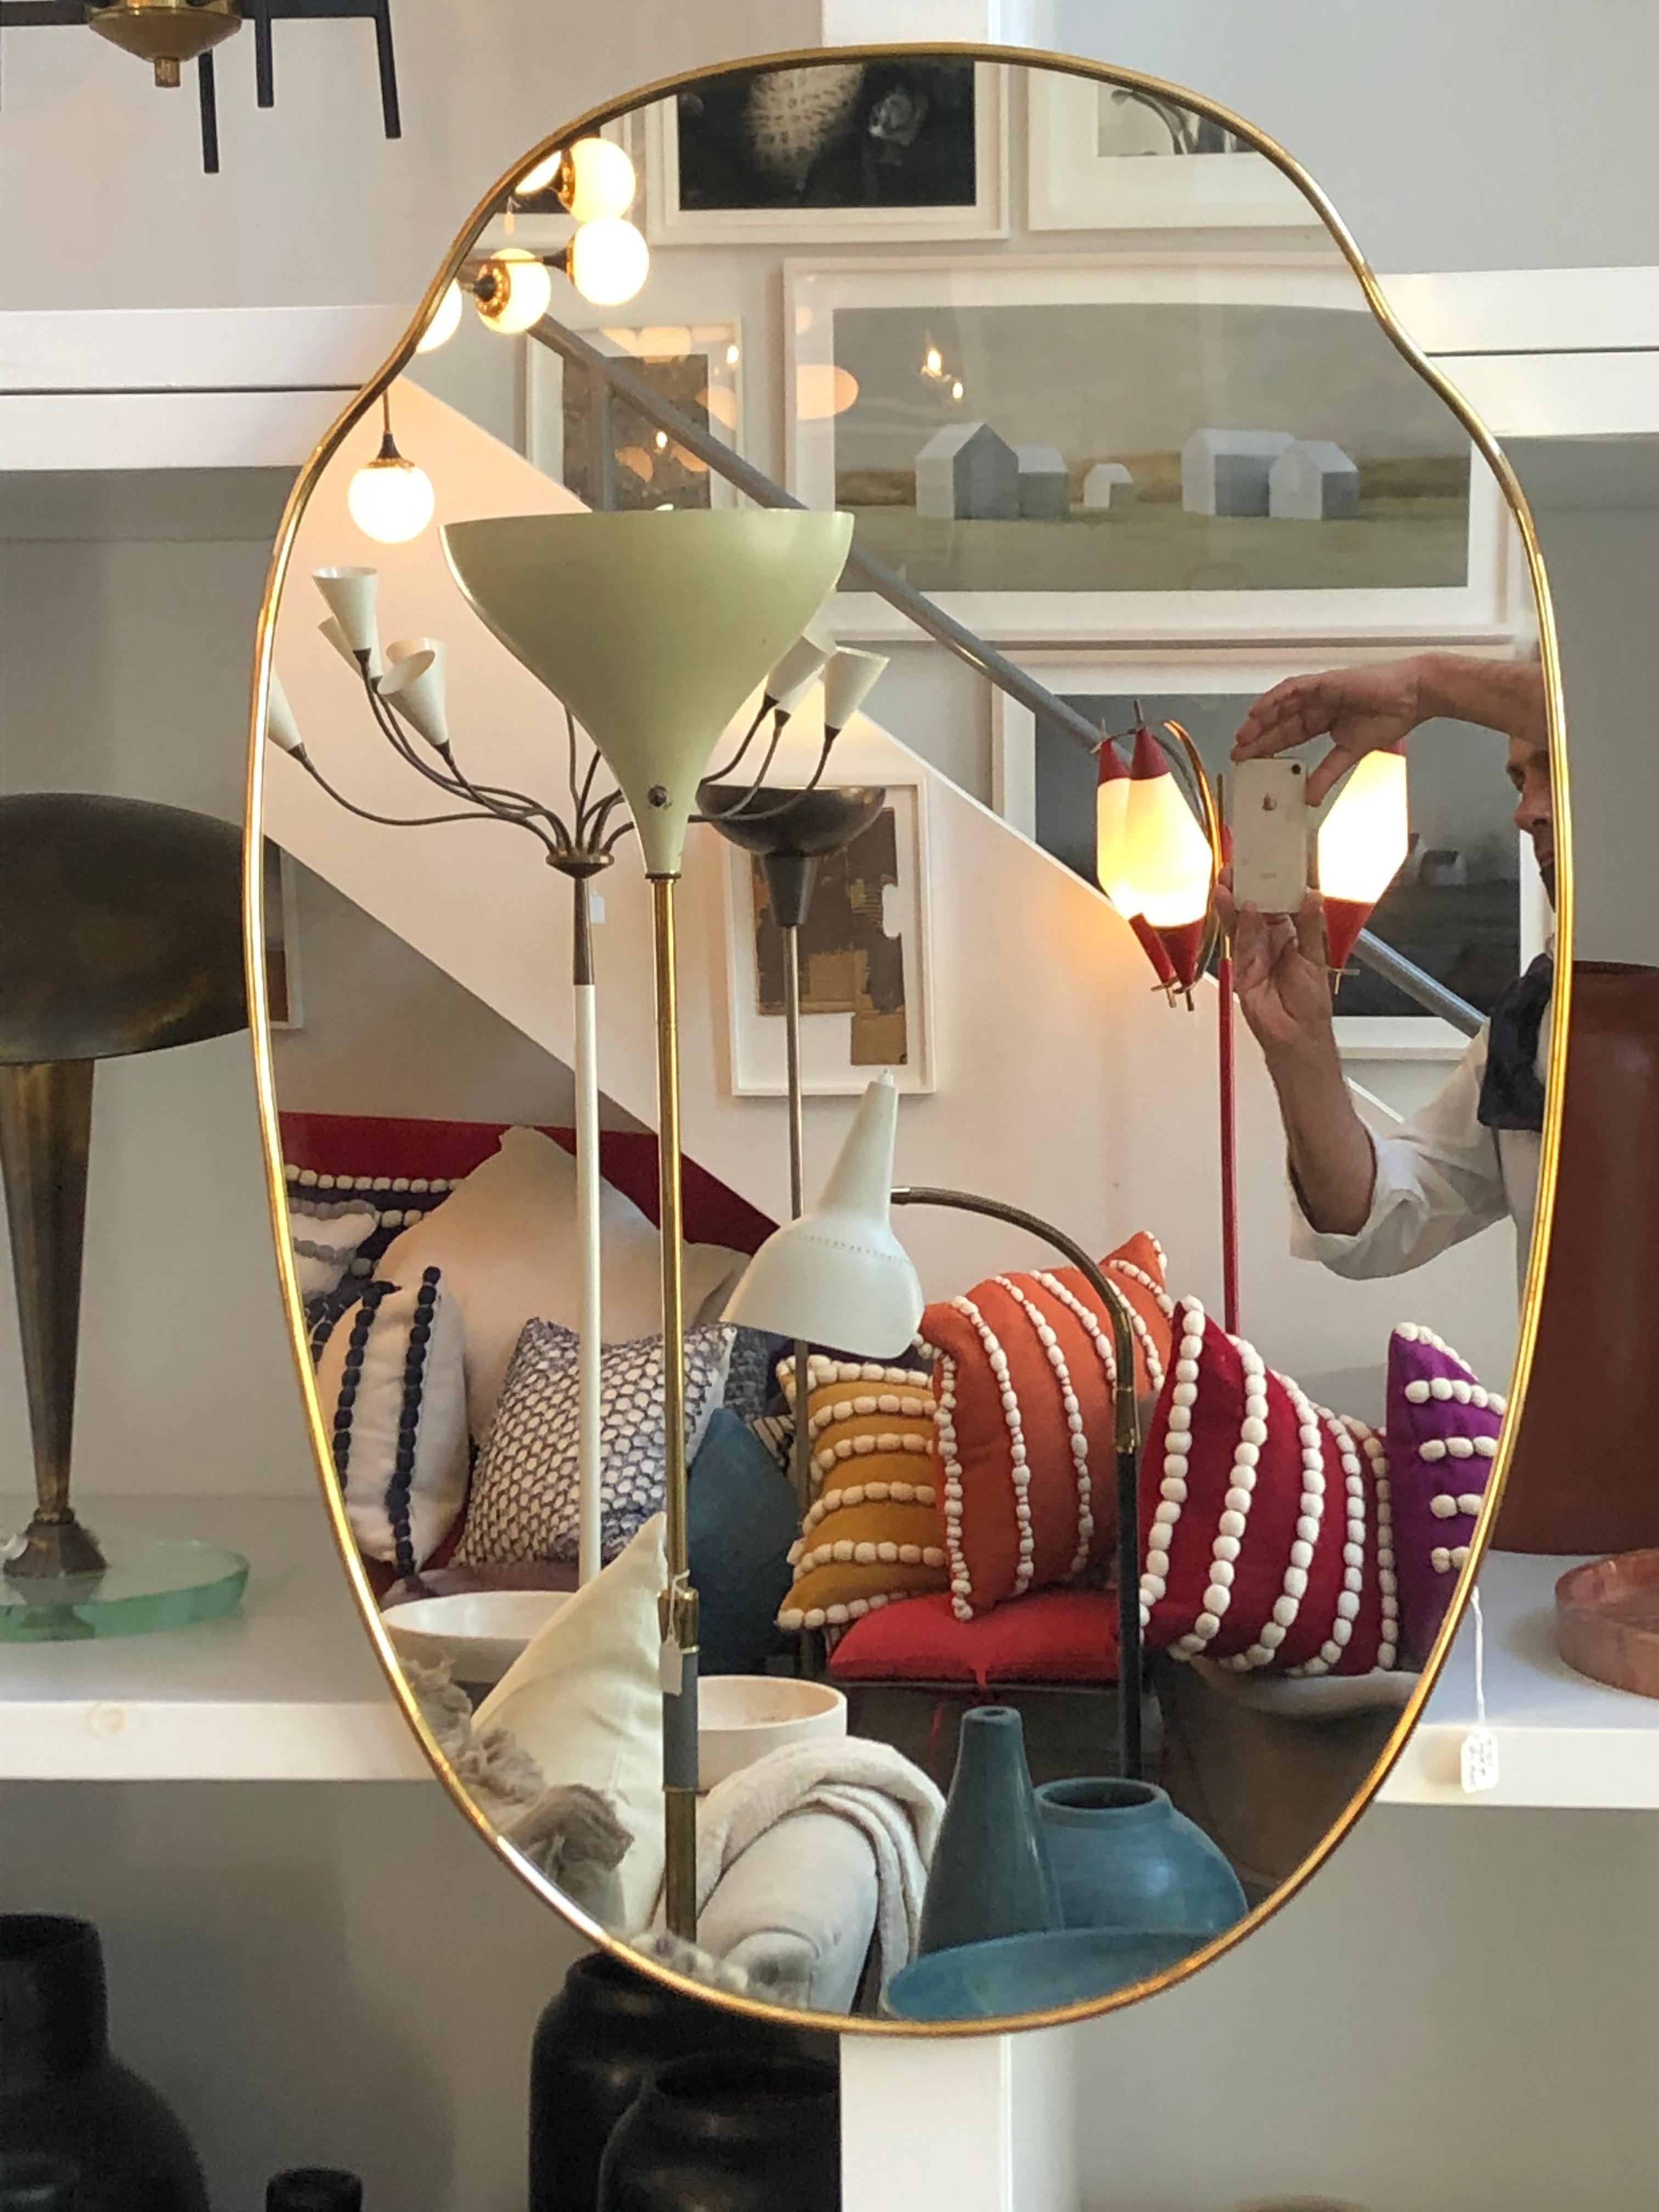 Miroir italien en laiton par Le Lampade.
Style italien Gio Ponti des années 1950.
Ce miroir peut être fabriqué sur mesure et plusieurs finitions sont disponibles.